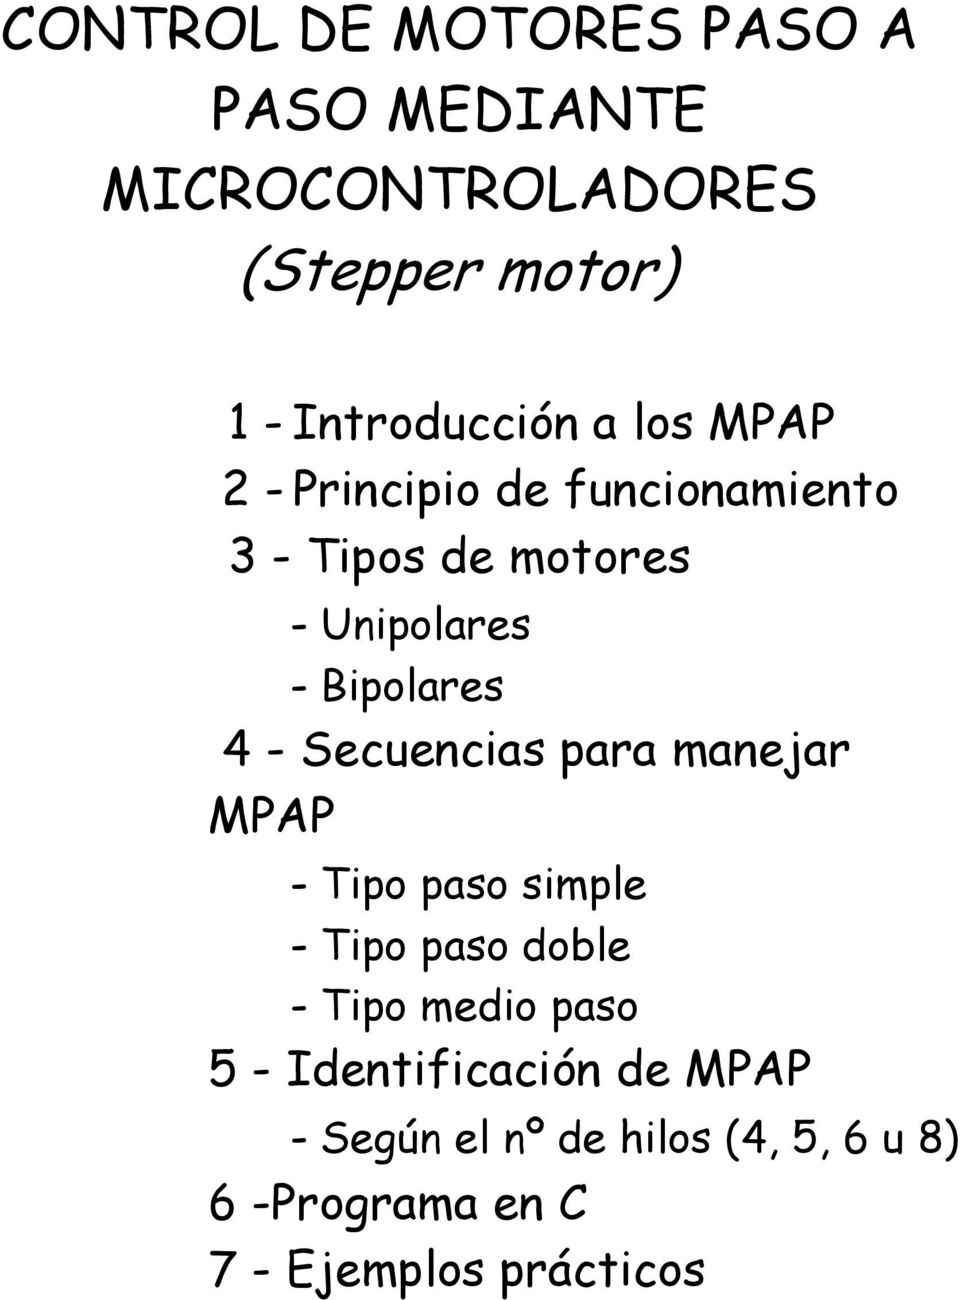 Secuencias para manejar MPAP - Tipo paso simple - Tipo paso doble - Tipo medio paso 5 -